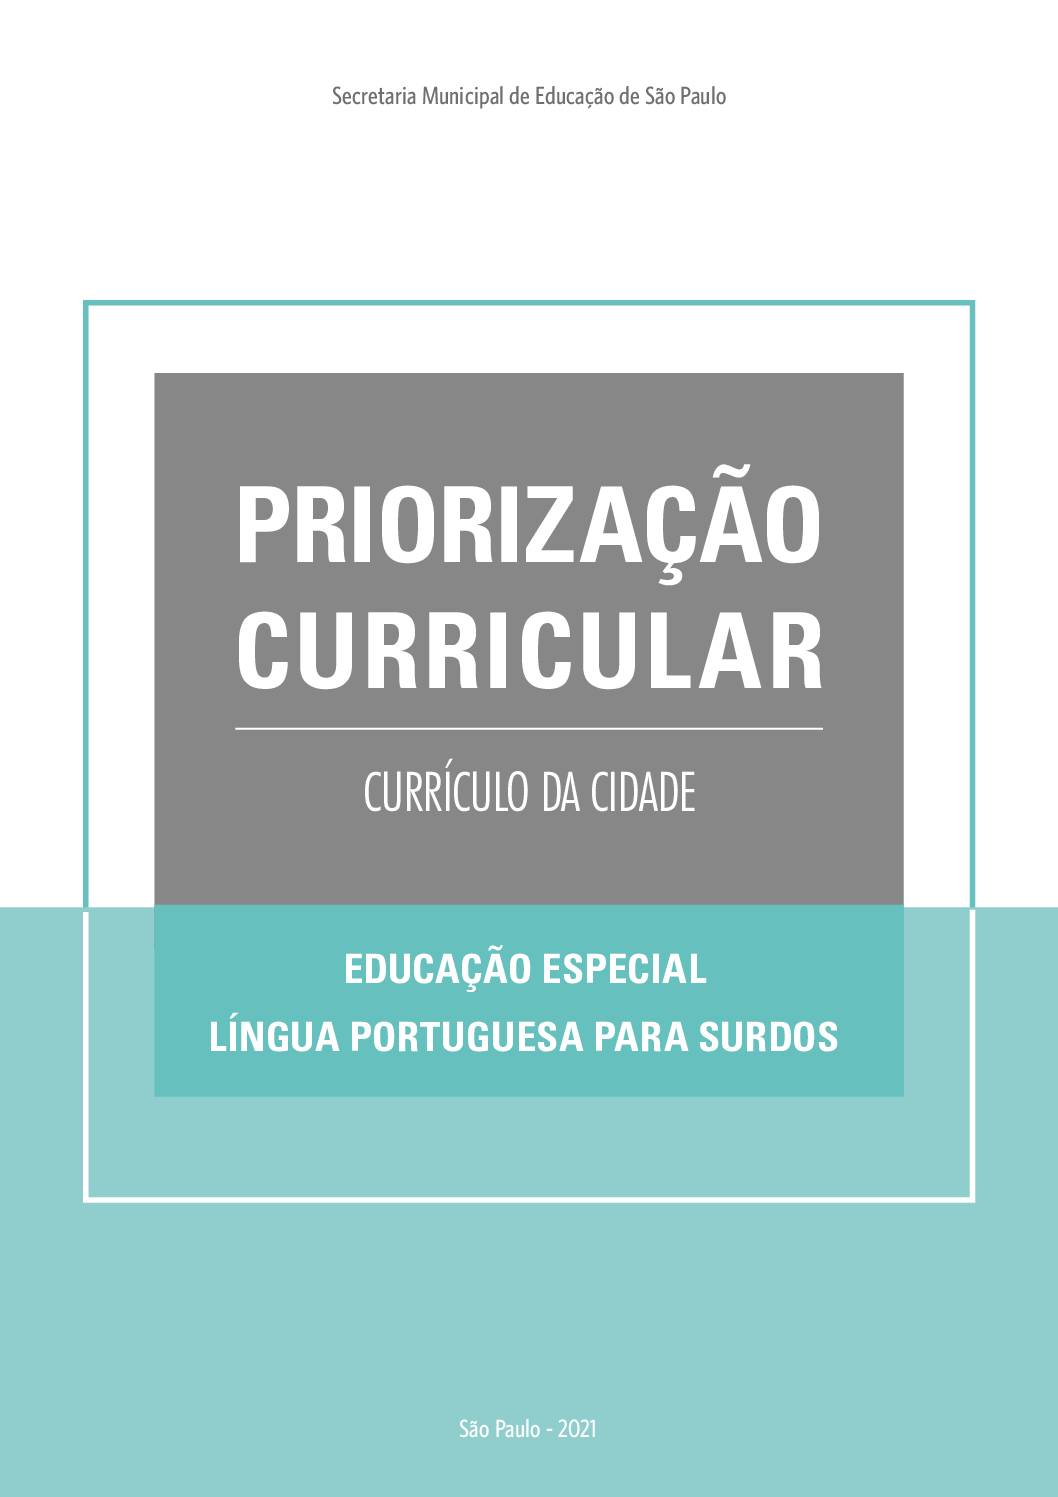 Publicação que apresenta os objetivos de aprendizagem prioritários do Currículo da Cidade de Língua Portuguesa para Surdos no Ensino Fundamental.